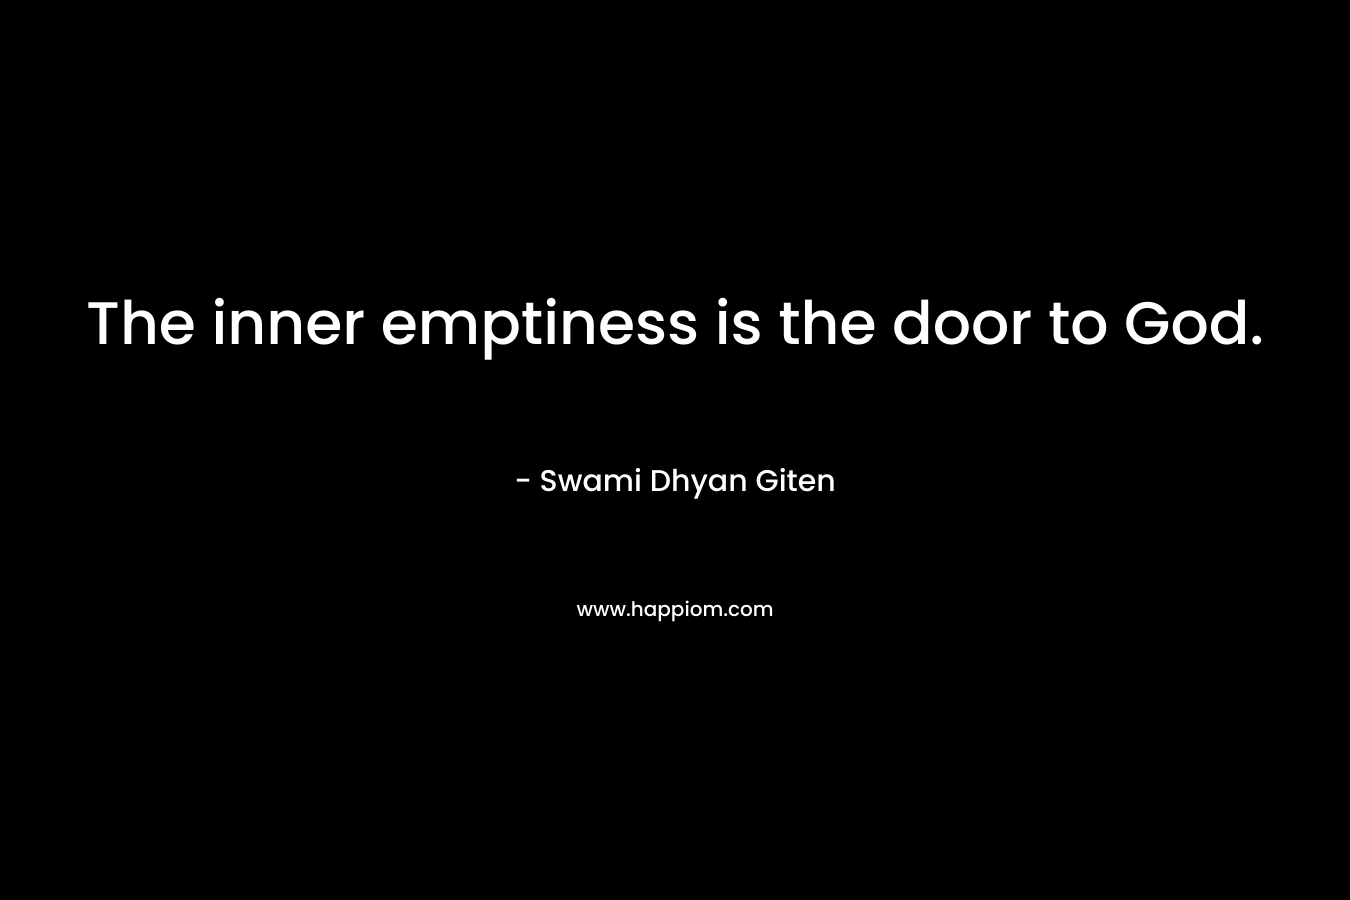 The inner emptiness is the door to God.